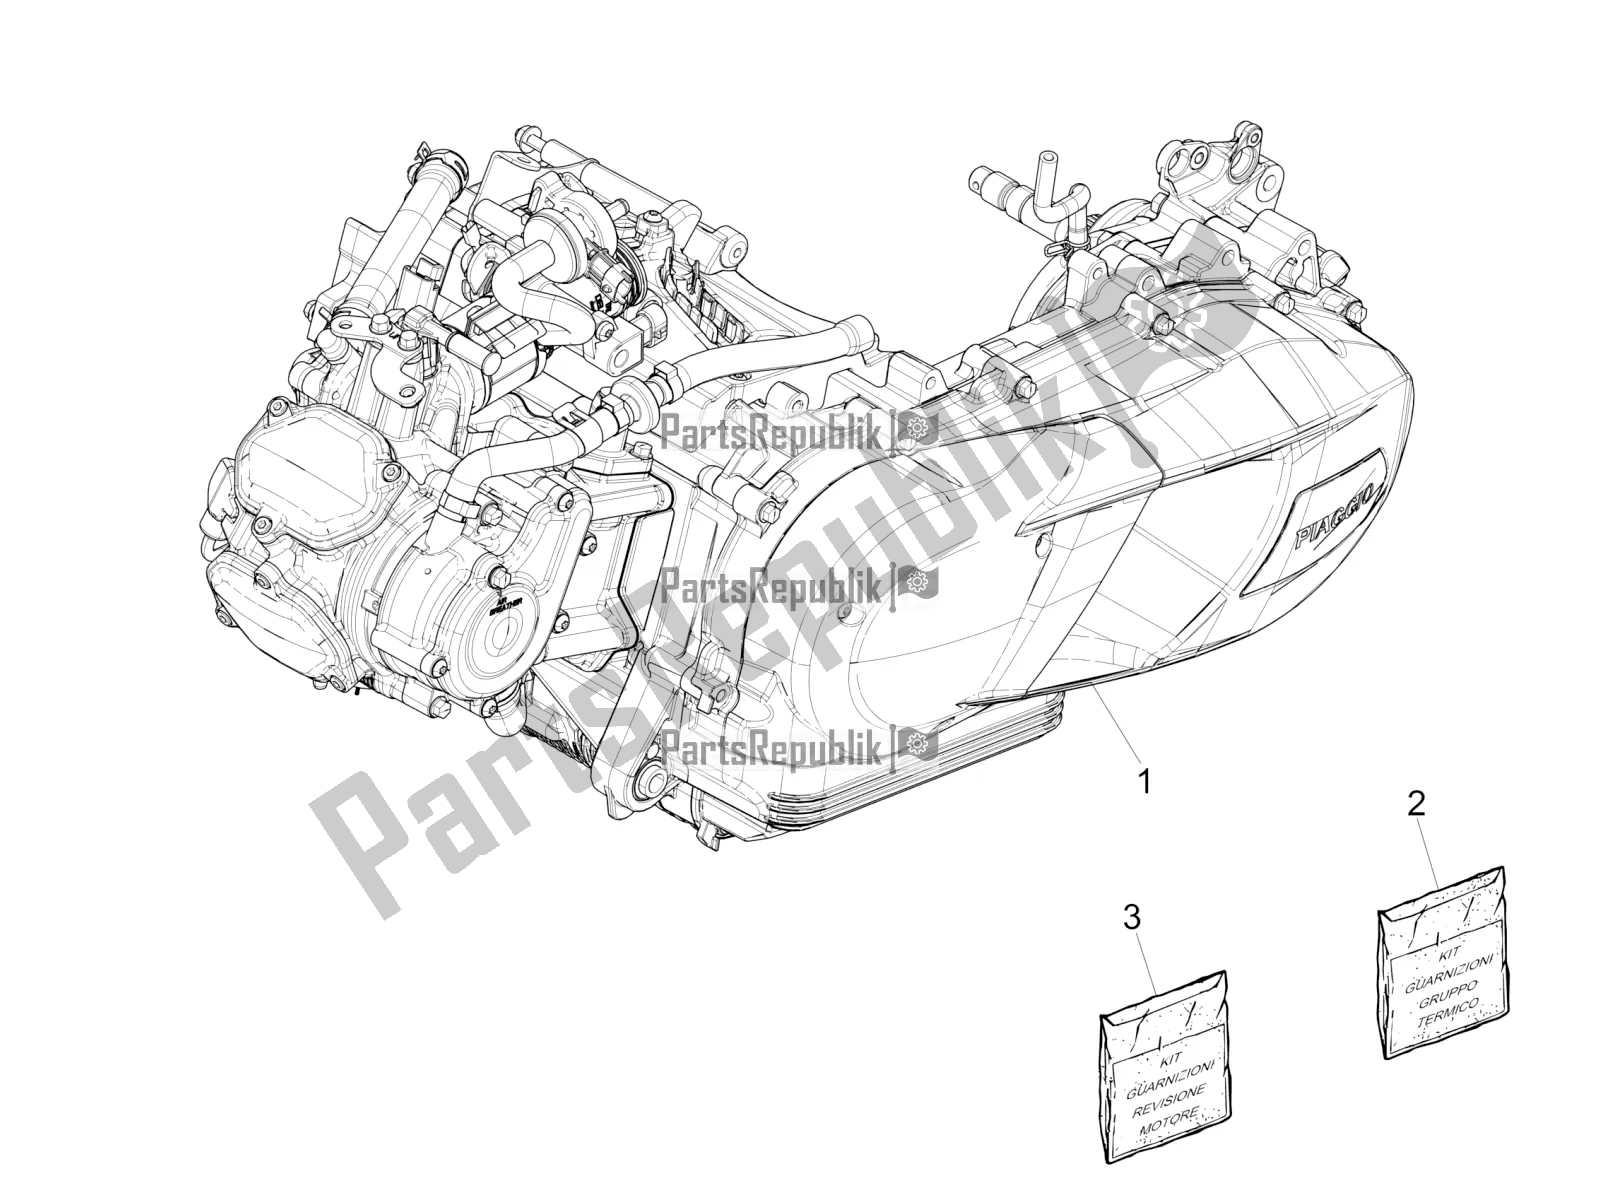 Alle onderdelen voor de Motor Assemblage van de Vespa GTS 125 Super ABS 2018